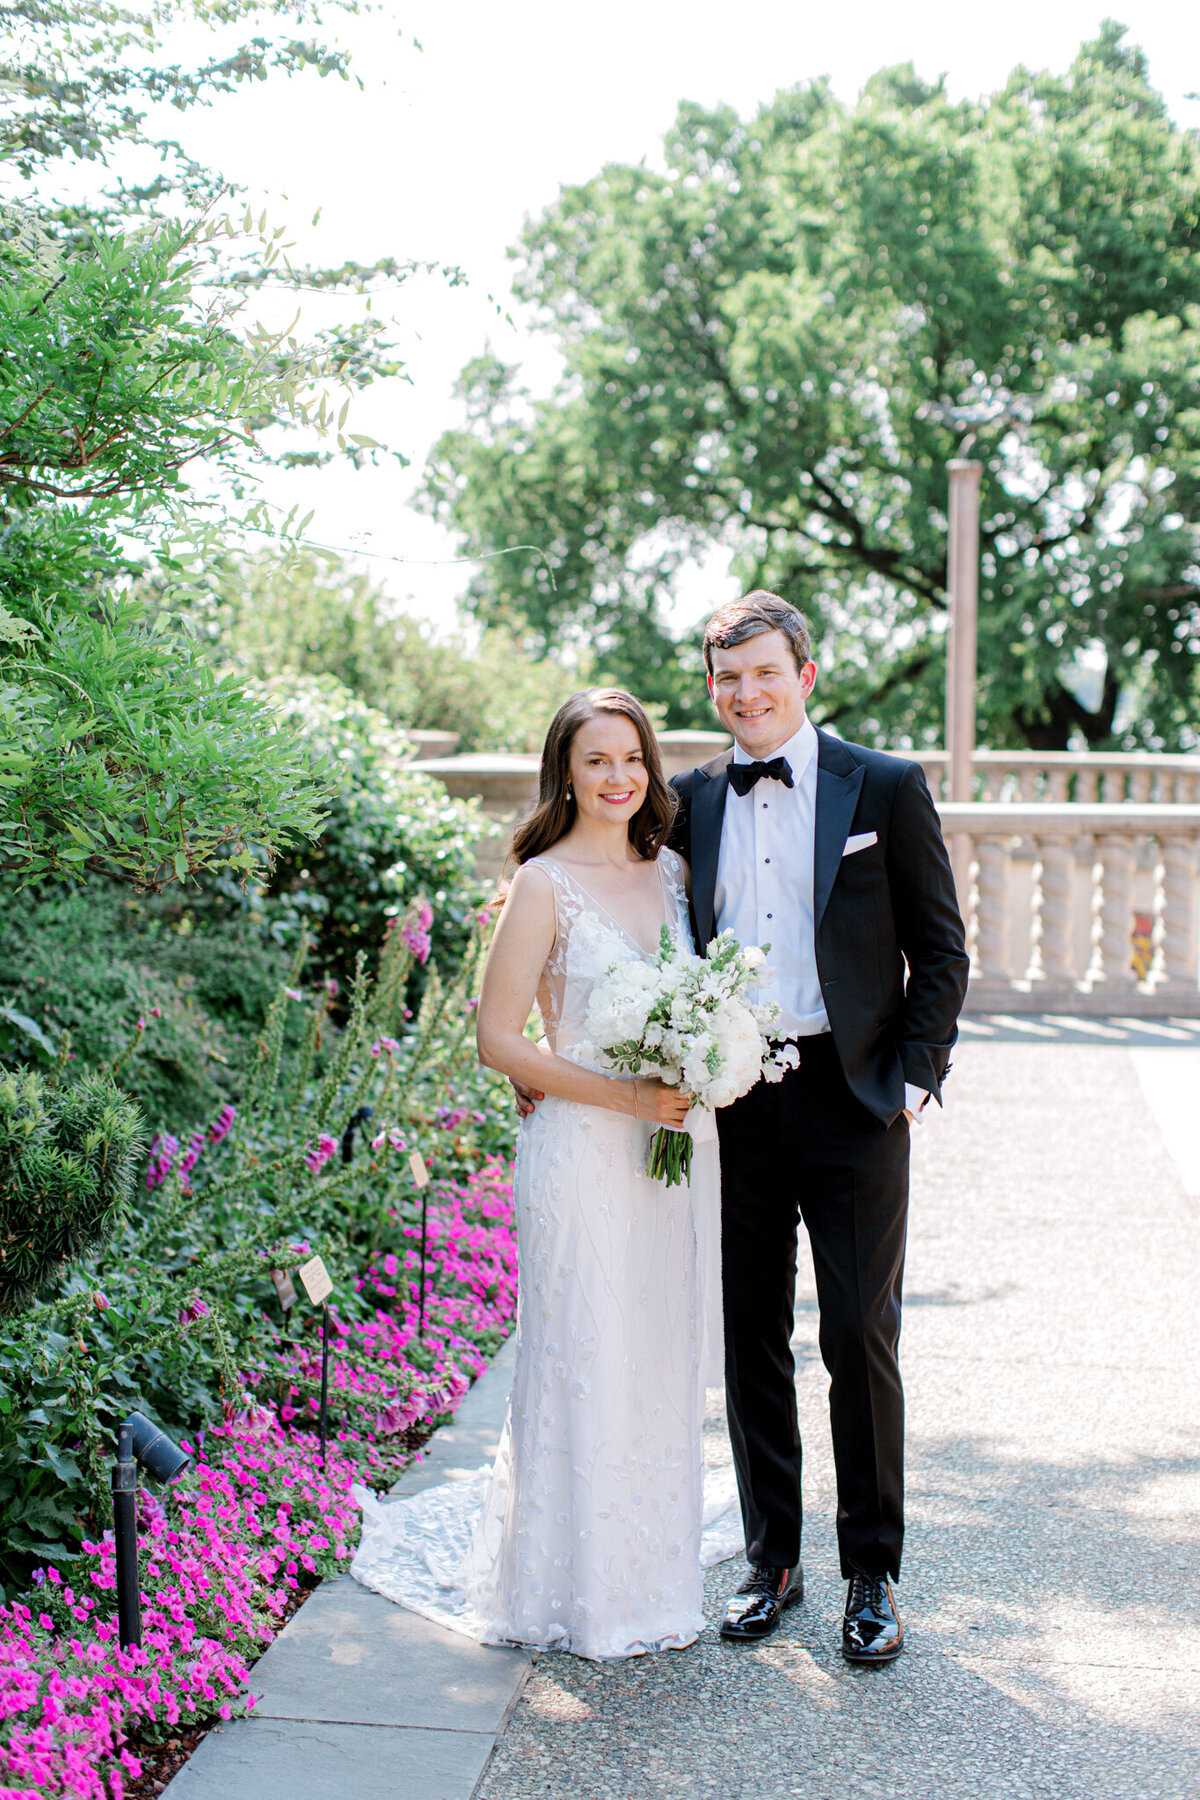 Gena & Matt's Wedding at the Dallas Arboretum | Dallas Wedding Photographer | Sami Kathryn Photography-1